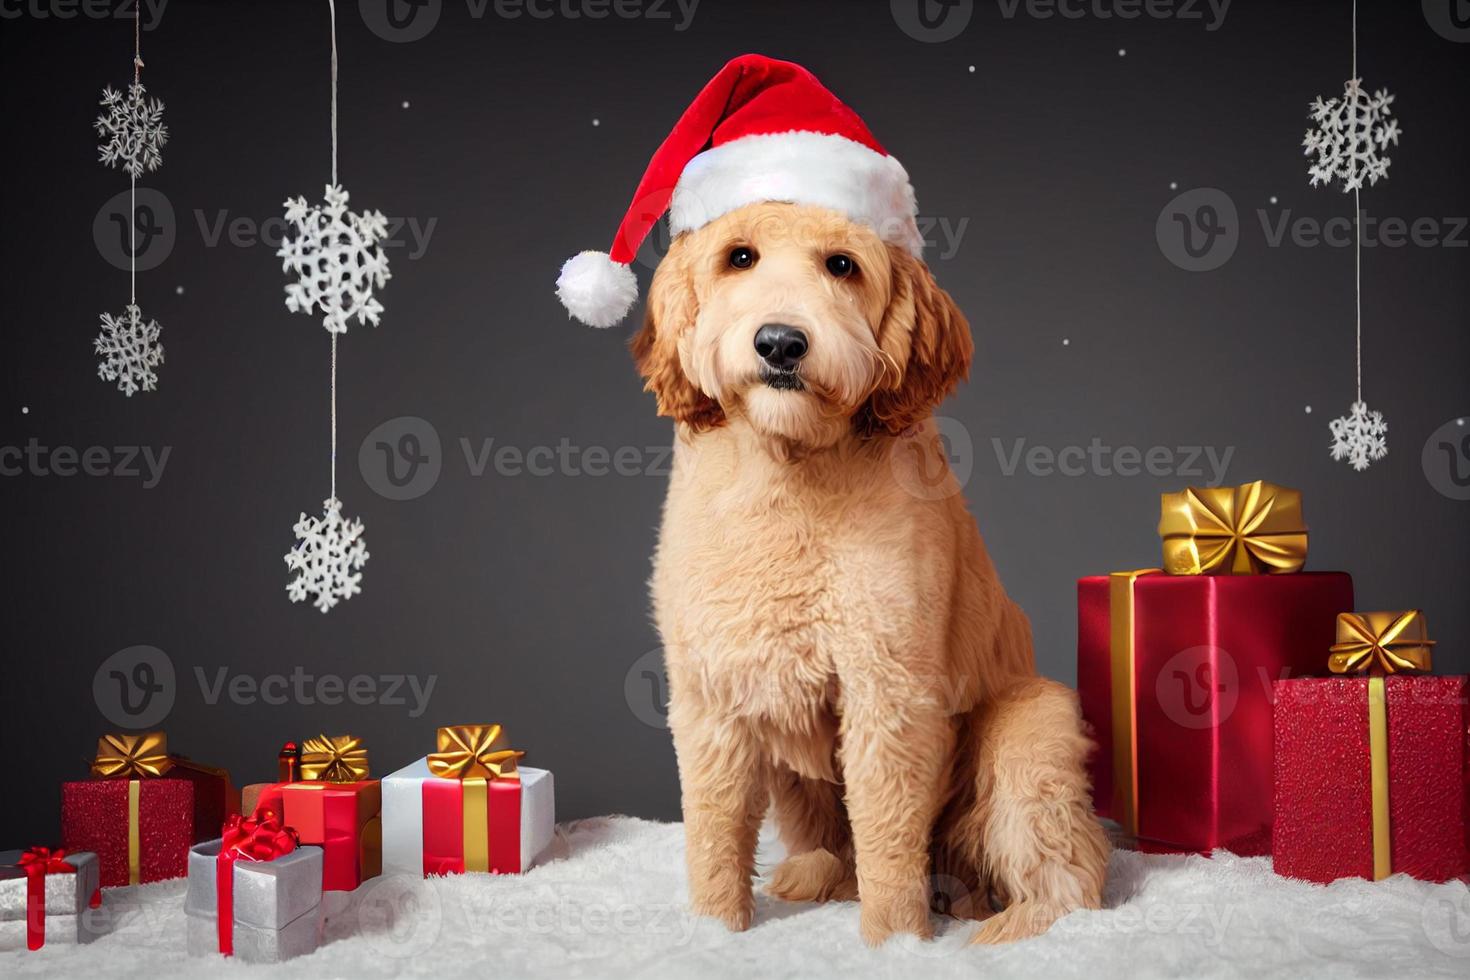 adorable perro goldendoodle con un sombrero de santa y adornos navideños, lindo foto